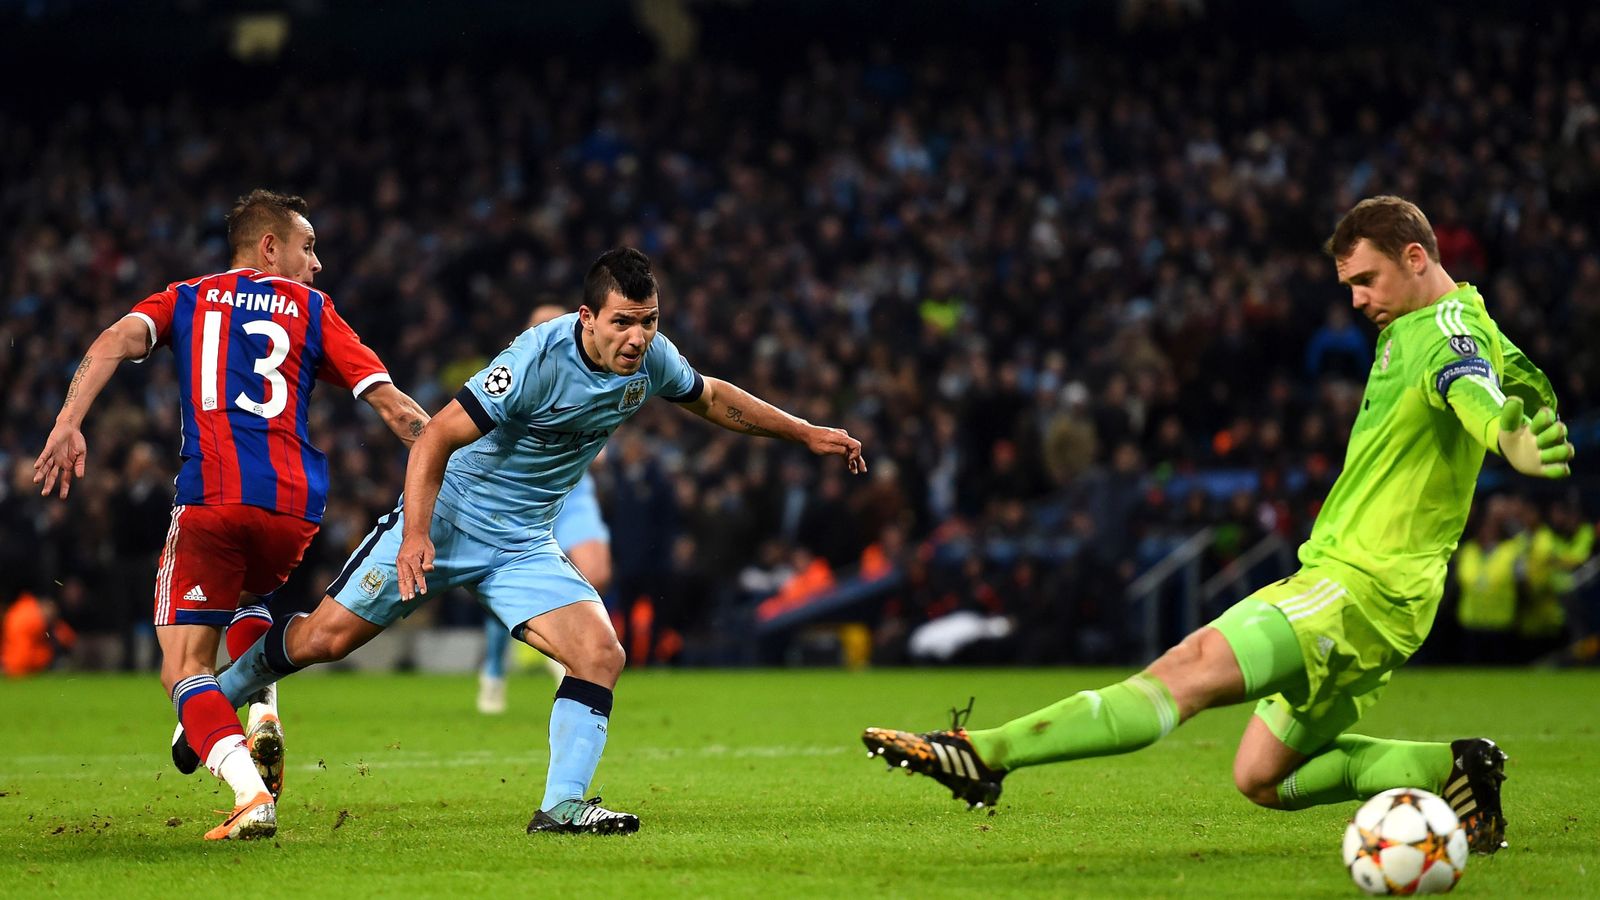 Man City 3 - 2 Bay Munich - Match Report & Highlights